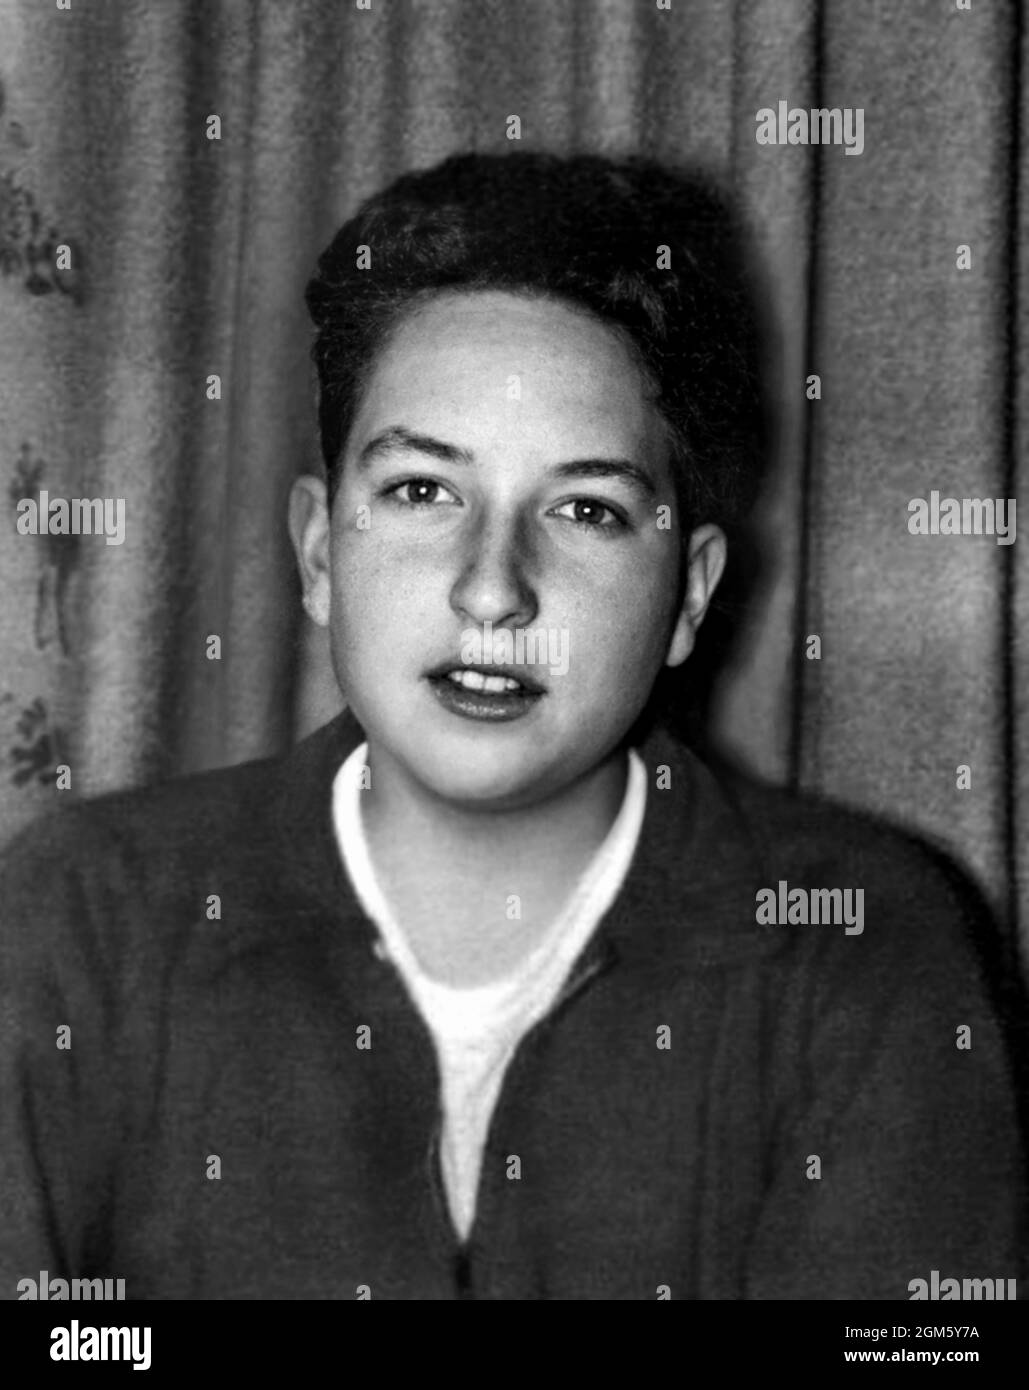 1956 , USA: The celebrated american singer and composer  BOB DYLAN ( born in 24 may 1941 ) when was a young boy aged 15 . In 2016, Dylan was awarded the Nobel Prize in Literature . Unknown photographer. - HISTORY - FOTO STORICHE - personalità da bambino bambini da giovane - personality personalities when was young - INFANZIA - CHILDHOOD - BAMBINO  - BAMBINI - CHILDREN - CHILD - MUSIC - MUSICA - cantante - COMPOSITORE - PREMIO NOBEL PER LA LETTERATURA - PORTRAIT - RITRATTO  --- ARCHIVIO GBB Stock Photo